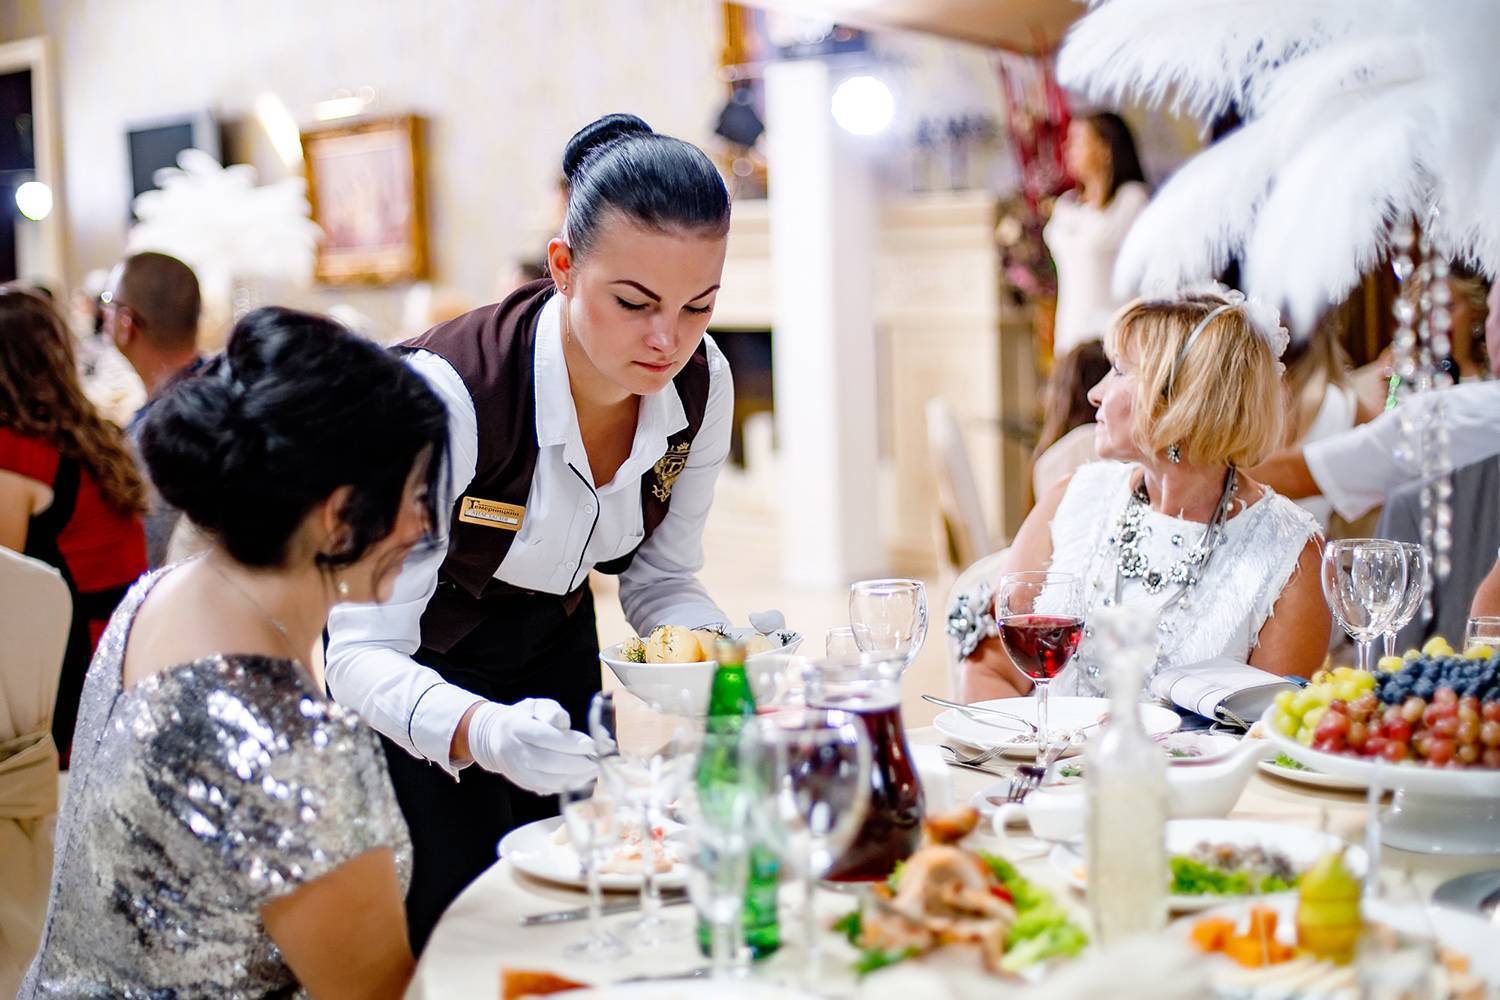 Стандарты обслуживания в ресторане: методы и формы, правила обращения с гостями